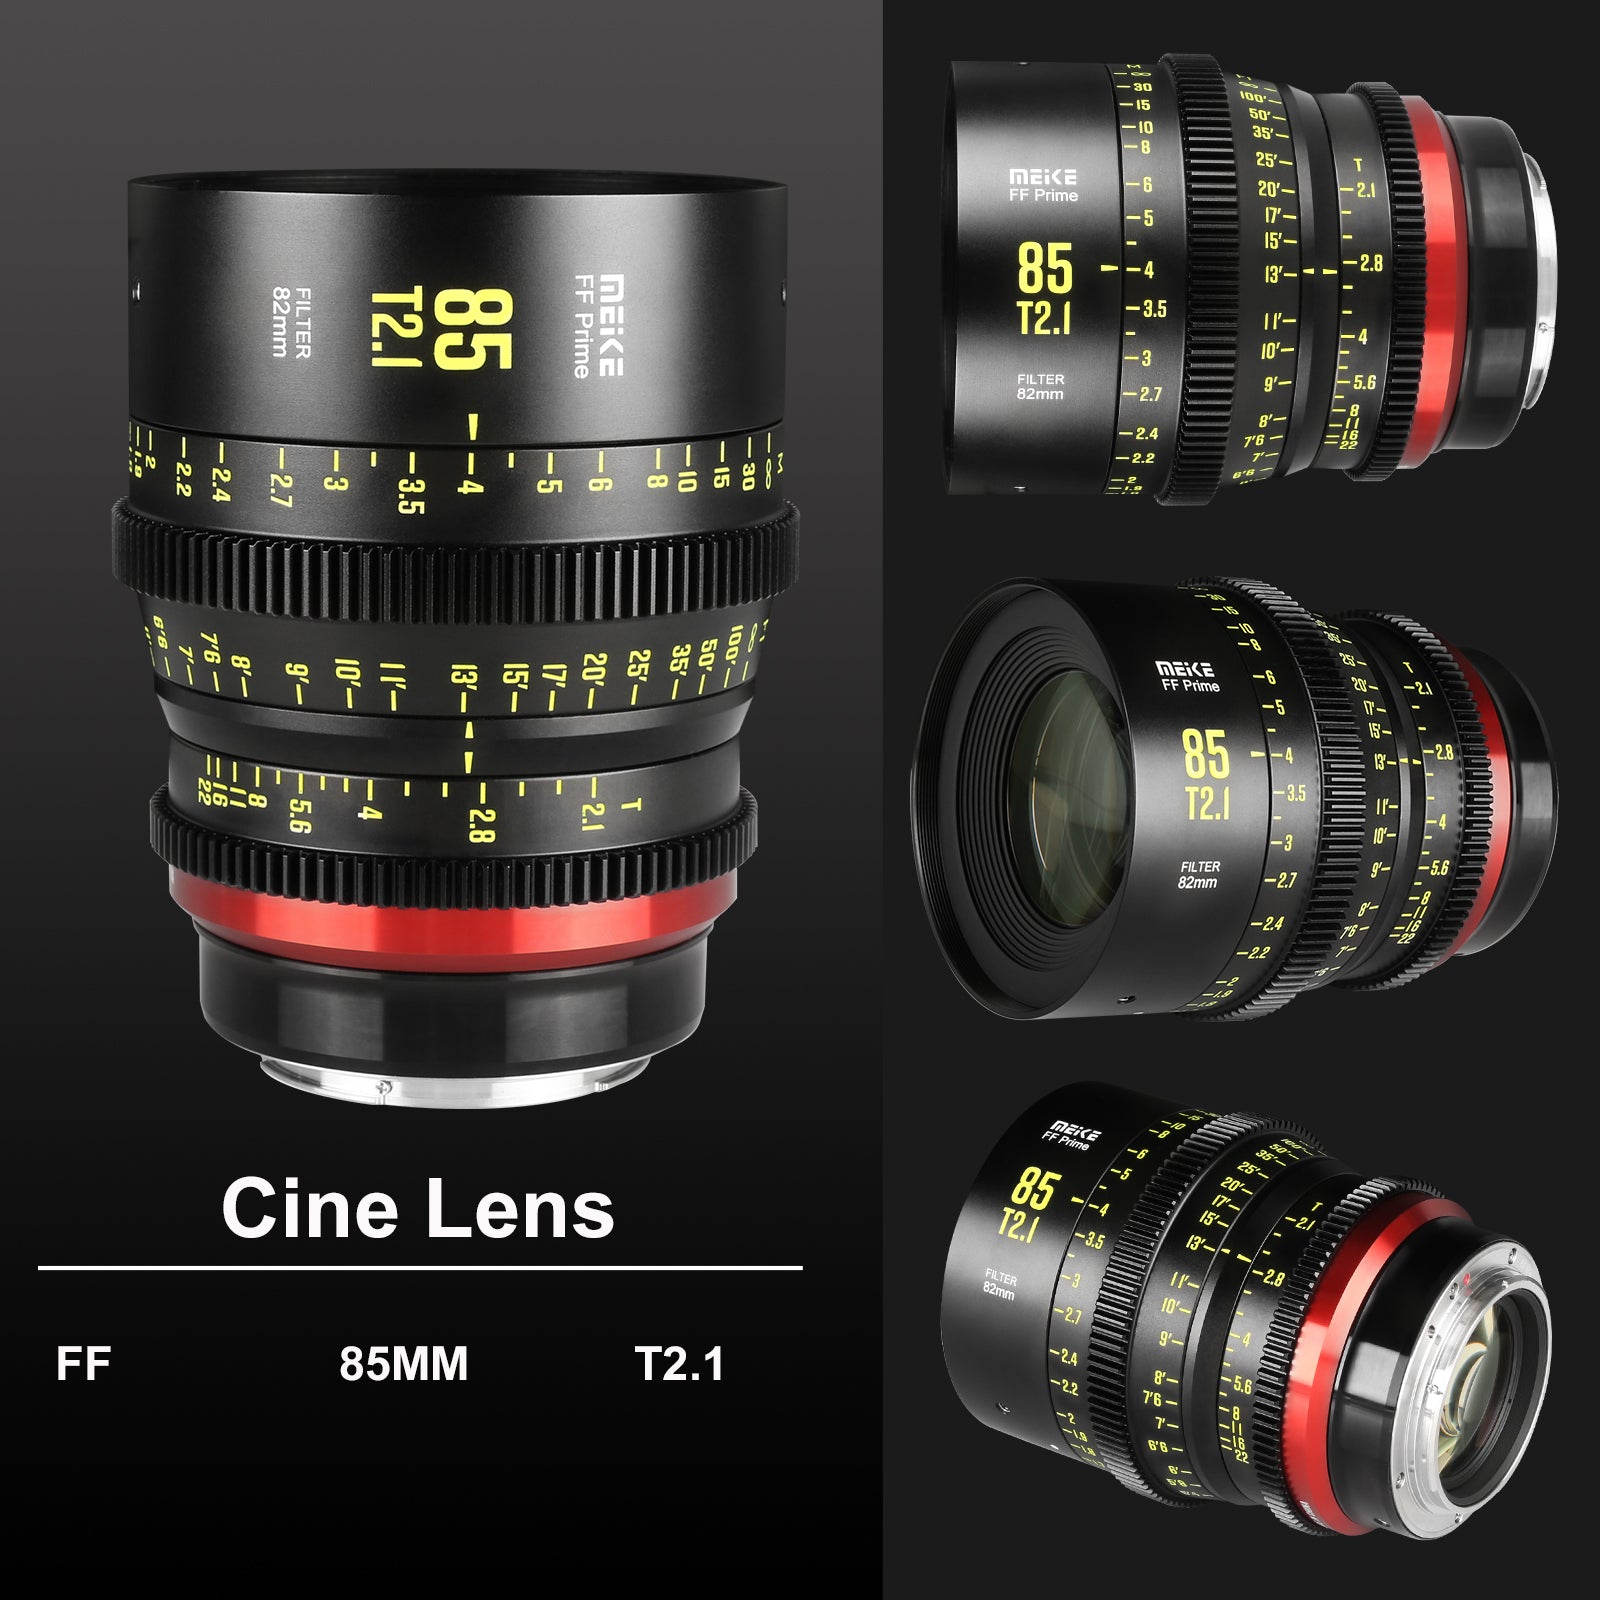 Meike Cinema Full Frame Cinema Prime 85mm T2.1 Lens (L Mount) in Different Perspectives